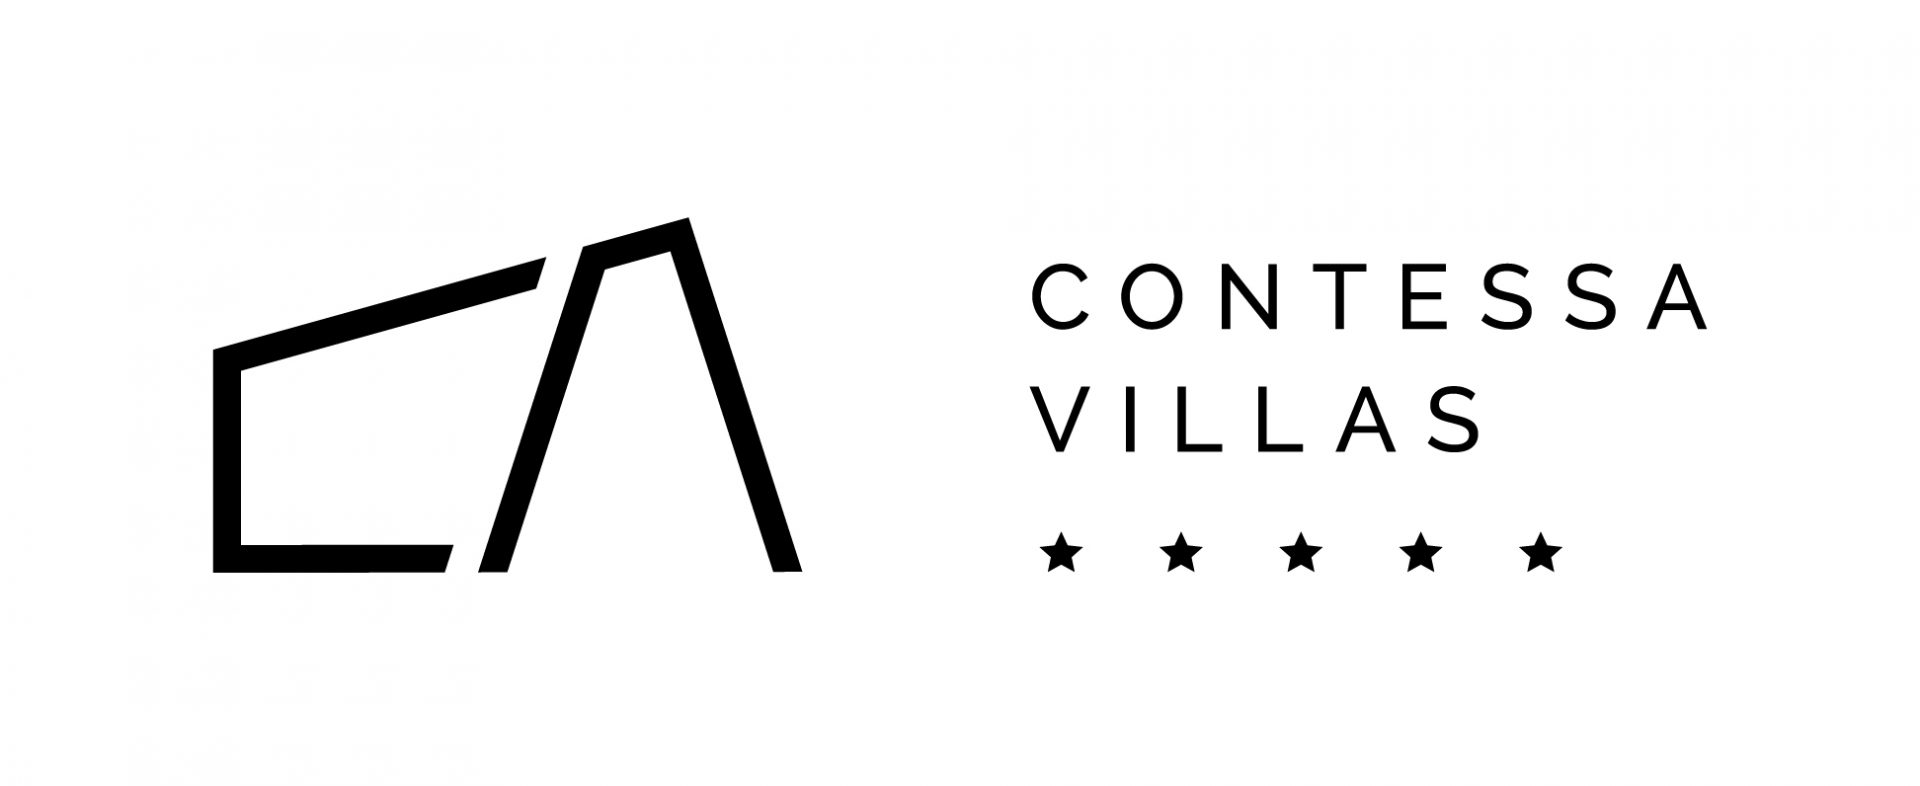 Uz Contessa Villas agenciju doživite nezaboravno iskustvo luksuza i elegancije